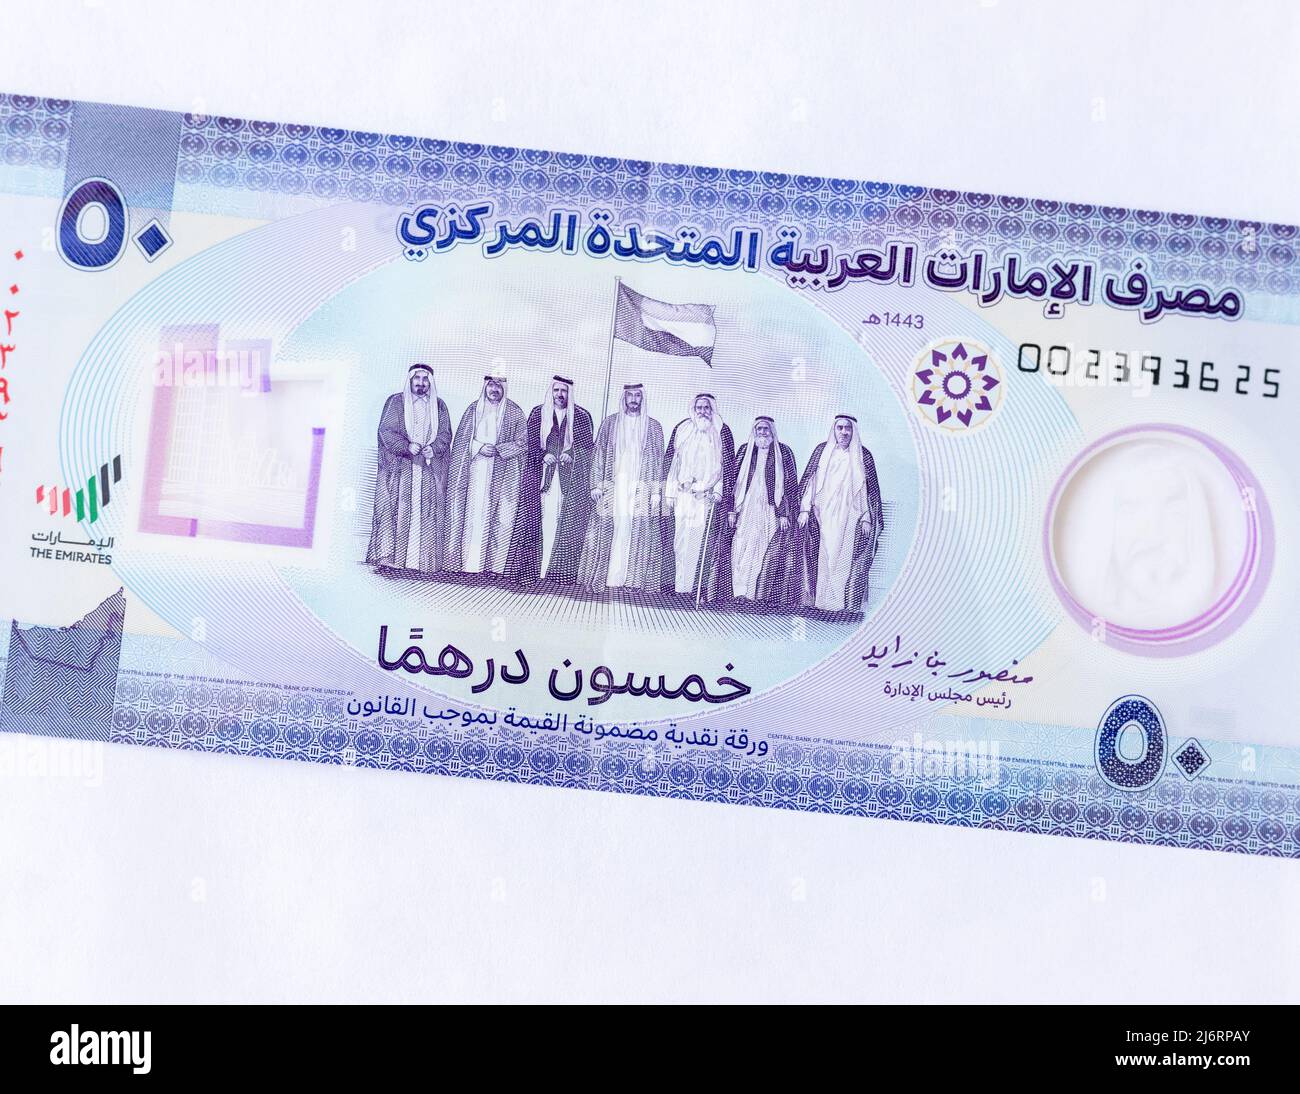 Gli Emirati Arabi Uniti lanciano la nuova banconota da Dh50 polimeri con l'immagine dei leader fondatori degli Emirati Arabi Uniti Foto Stock